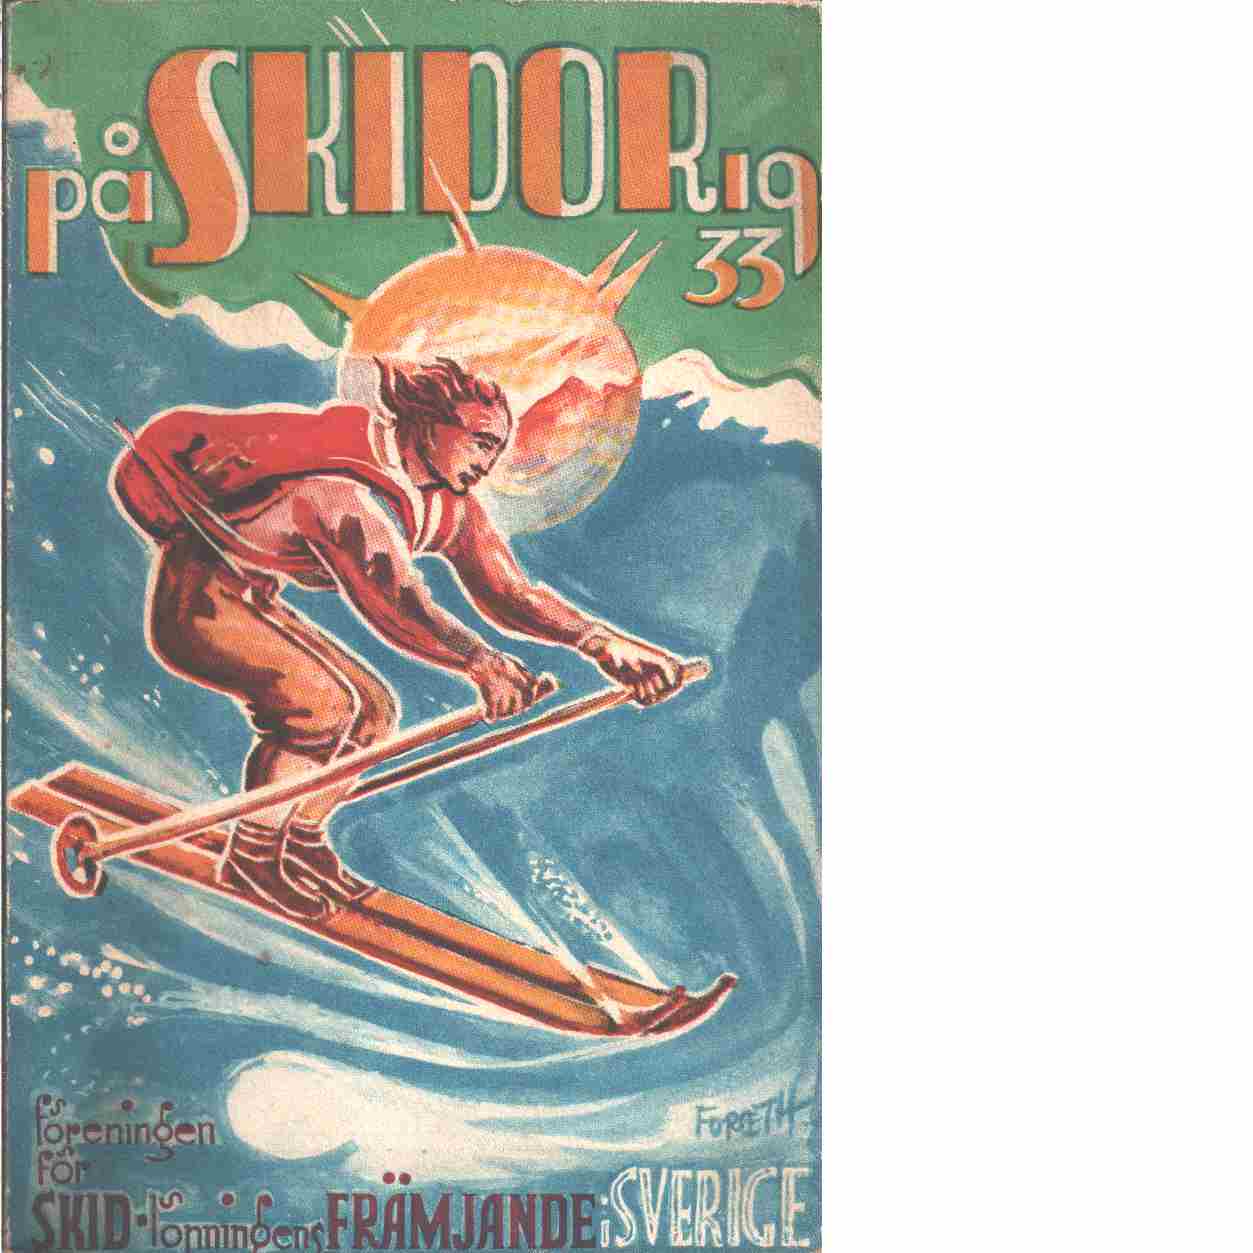 På skidor : Skid- och friluftsfrämjandets årsbok. Årsbok 1933 - Skid- och friluftsfrämjandet